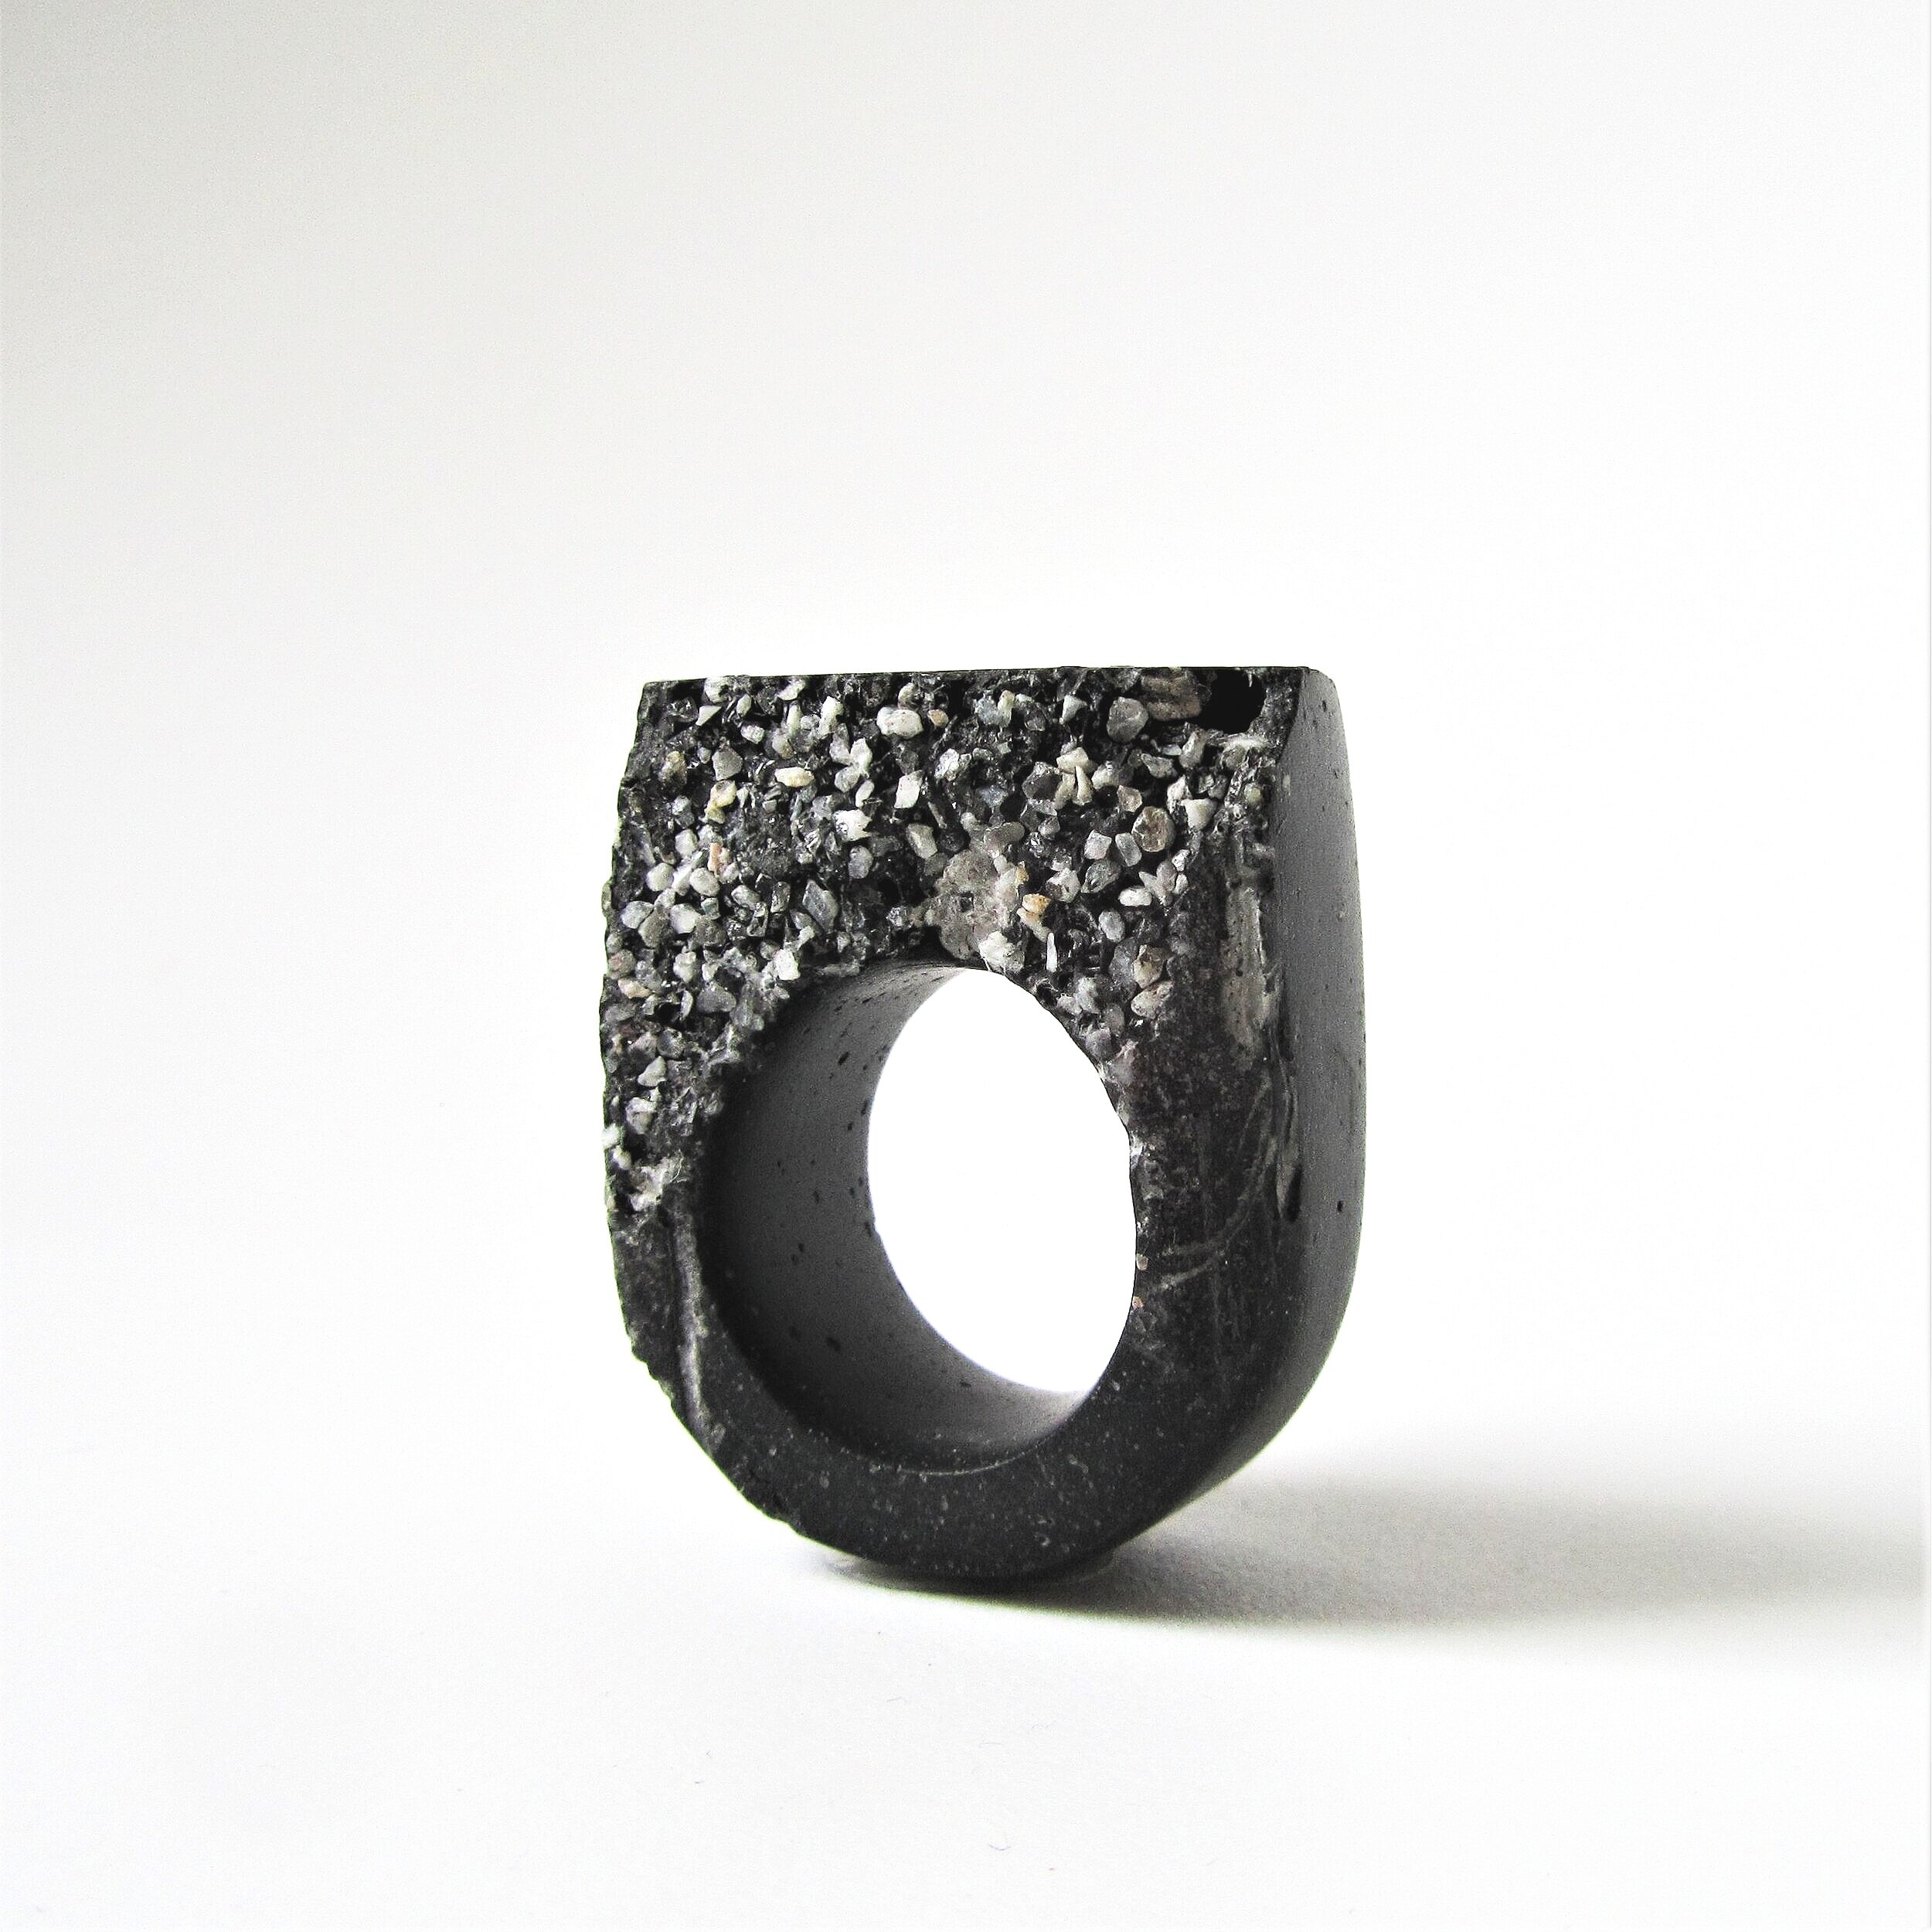 jade+mellor+hewn+ring+dark+charcoal+grey+granite+hewn+resin+ring+4.jpg